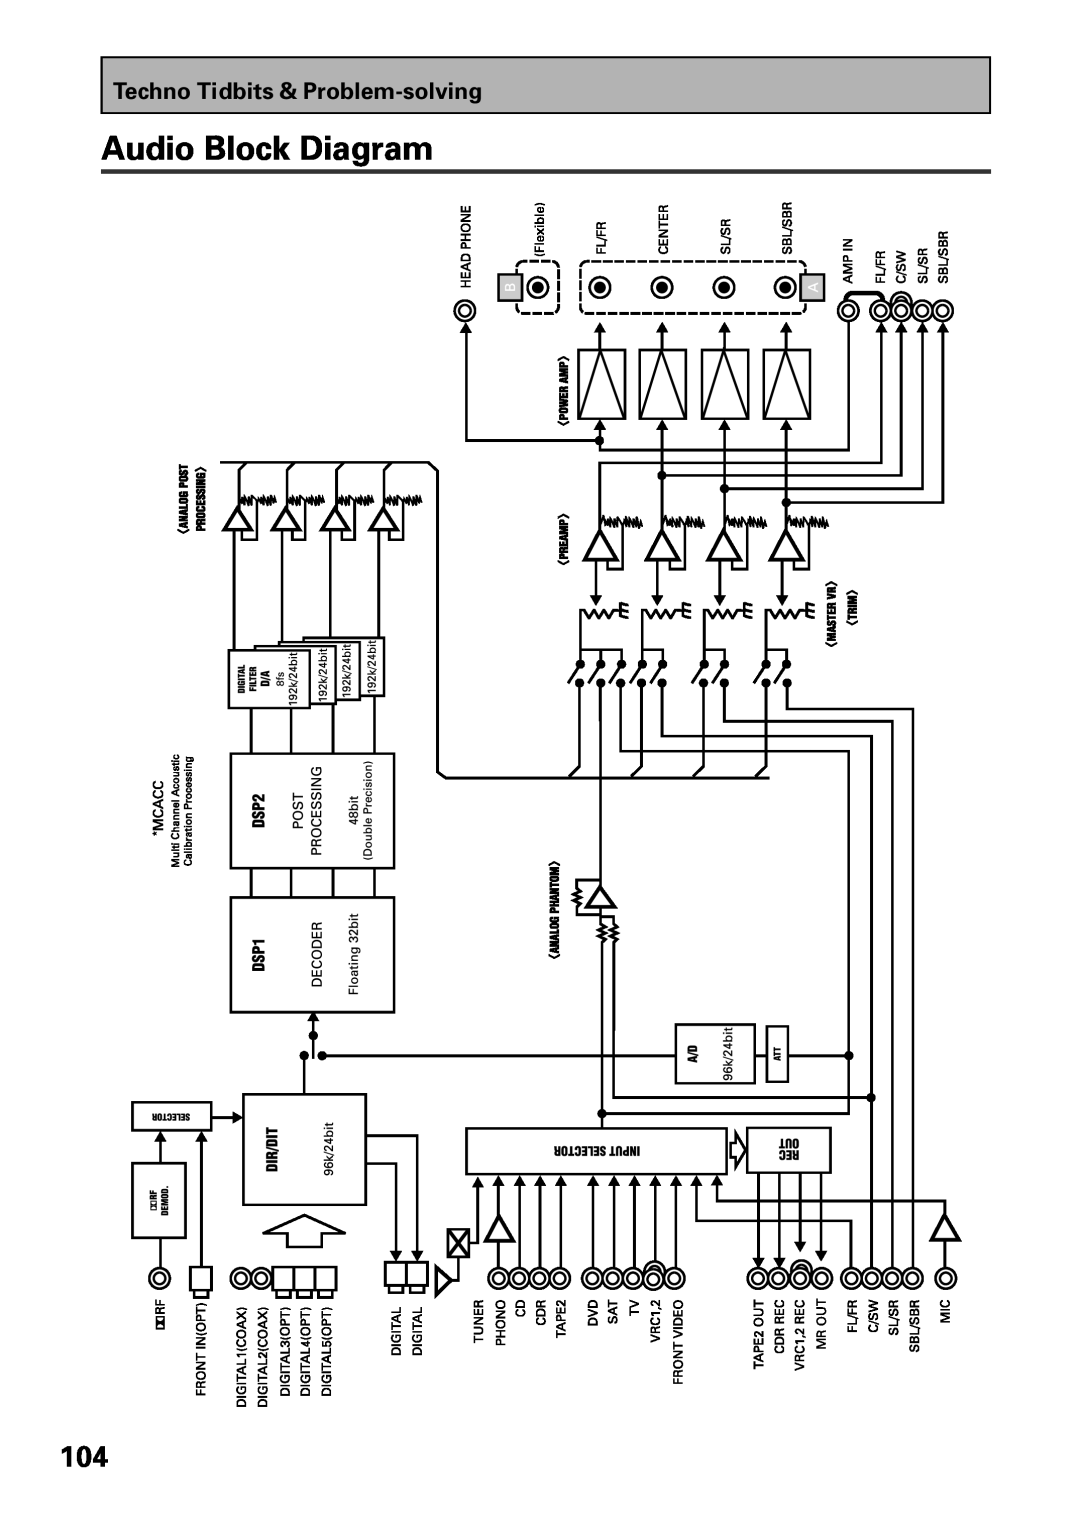 Pioneer VSX-47TX manual Audio Block Diagram, Mr Out 